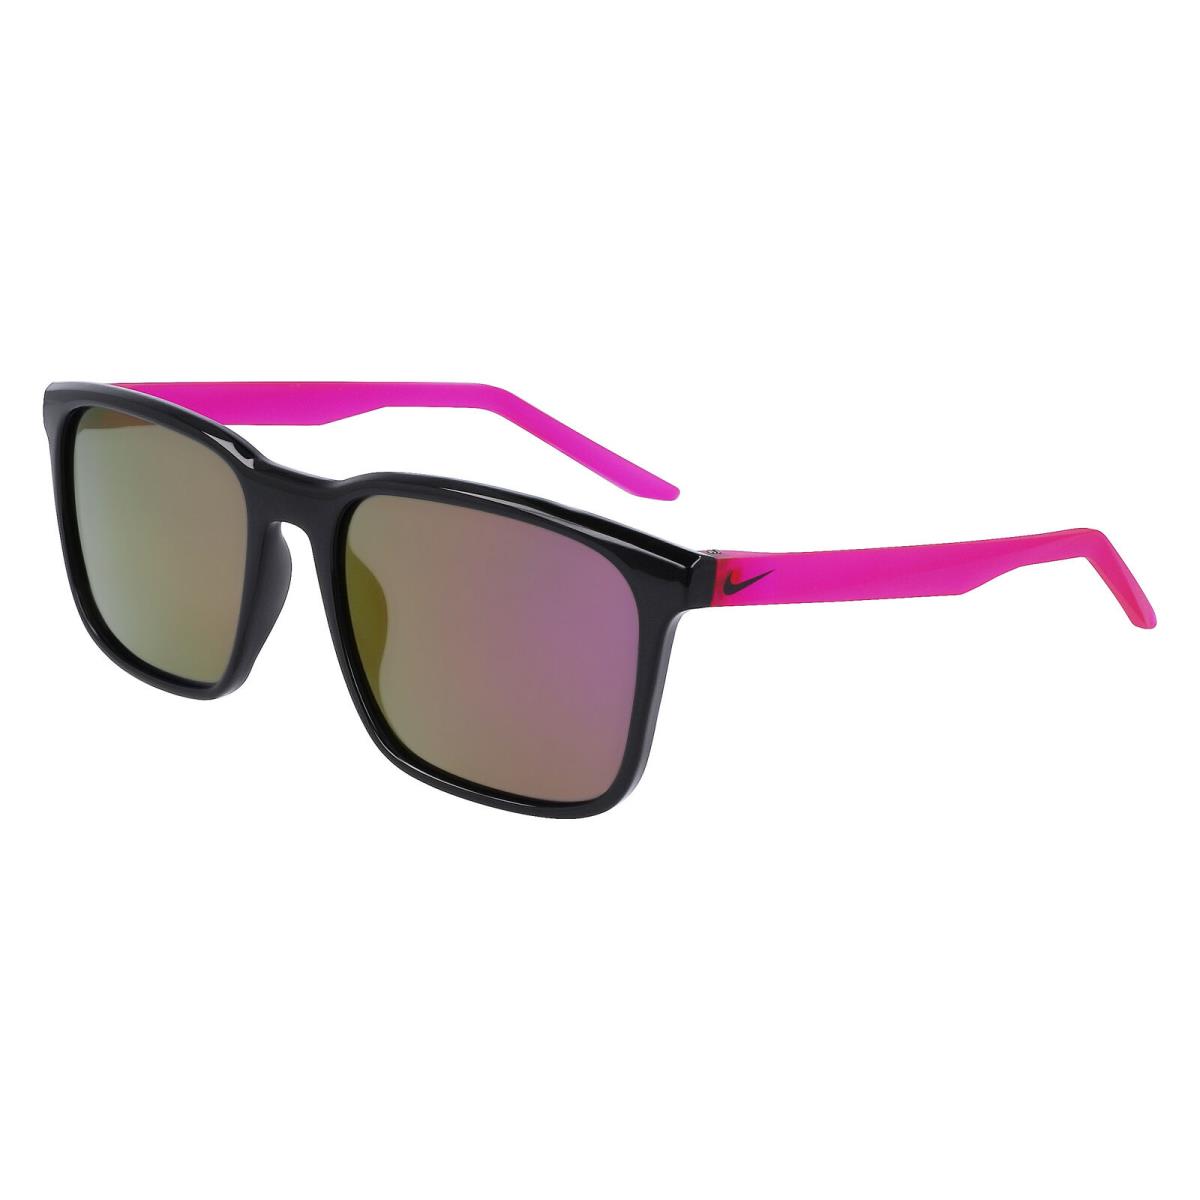 Nike Rave P FD1849 Black Polar Pink Flash 010 Sunglasses